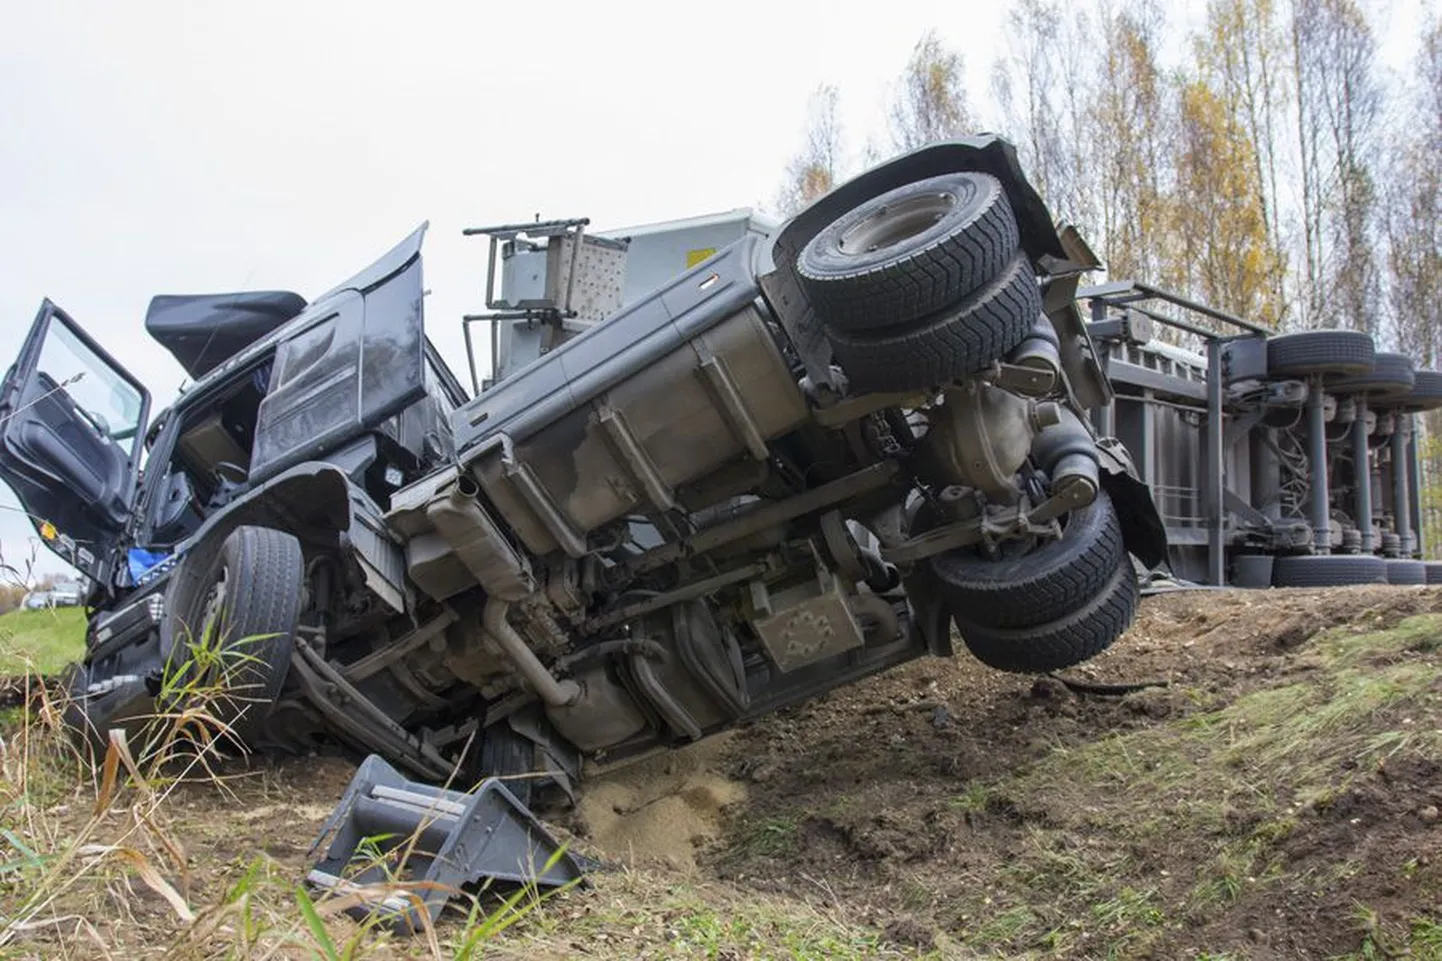 Üks eelmisel aastal Viljandimaal juhtunud avariidest: 16. oktoobril põrkasid Leie juures kokku veok ja sõiduauto.